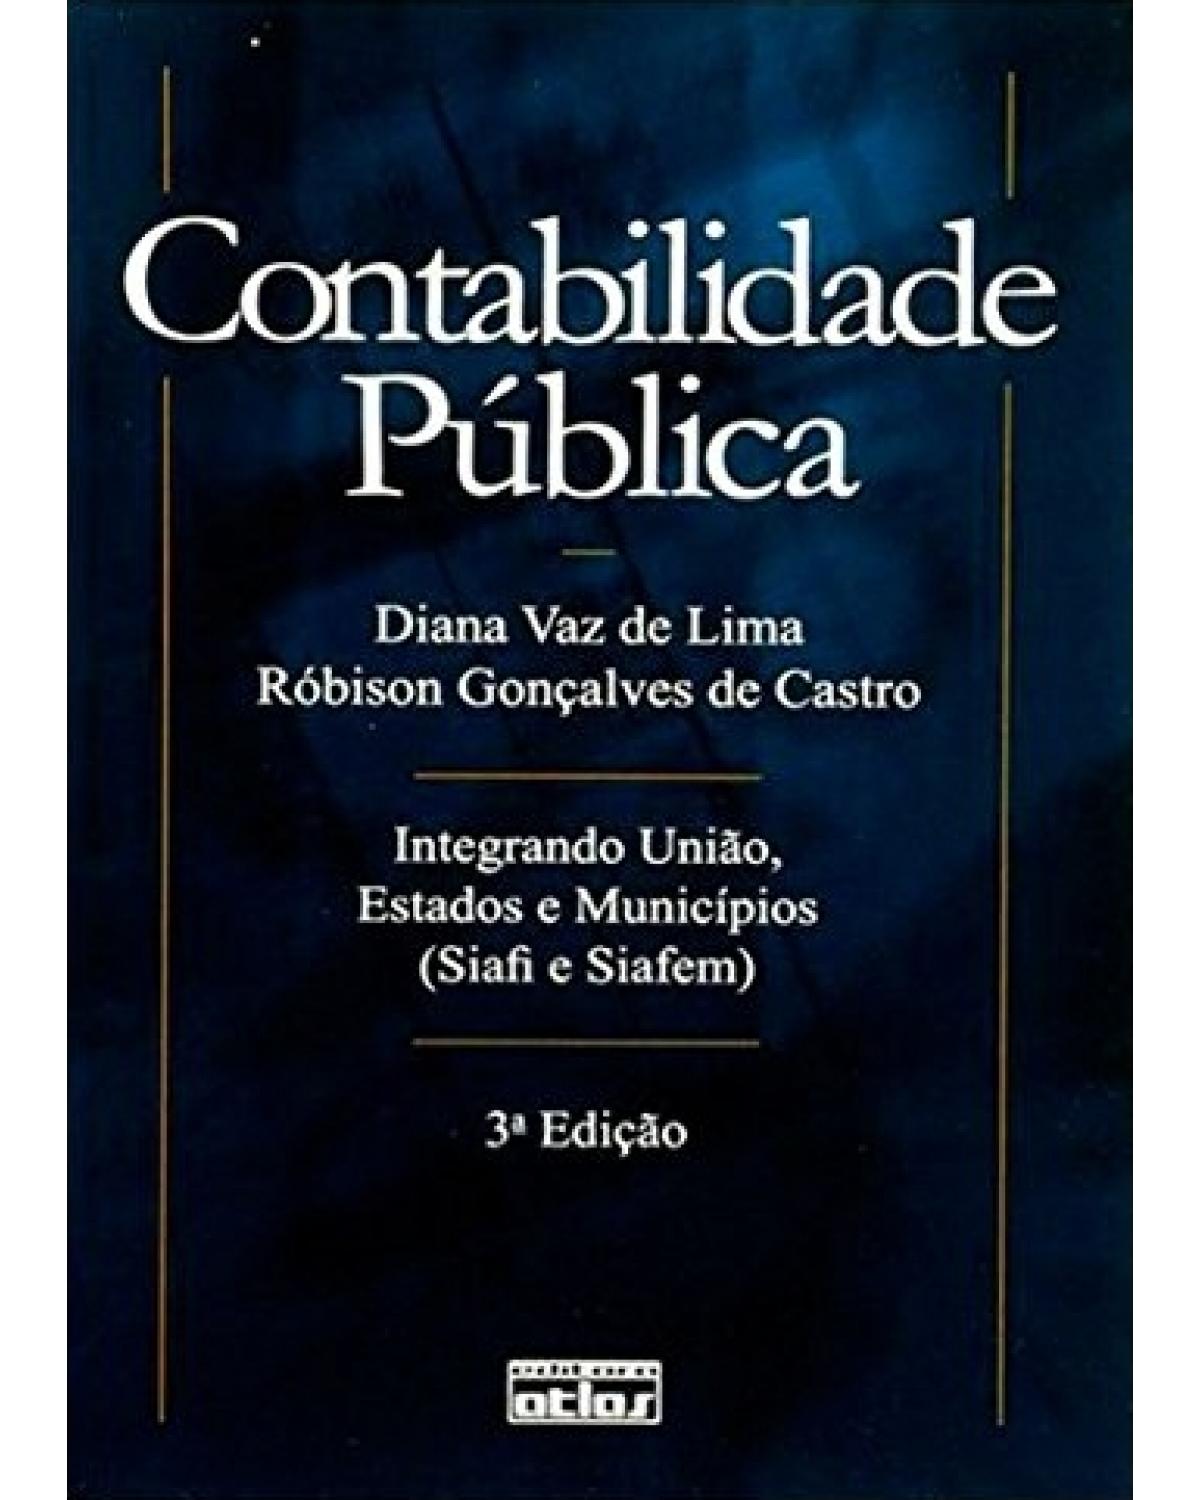 Contabilidade pública - Integrando união, estados e municípios (Siafi e Siafem) - 3ª Edição | 2007